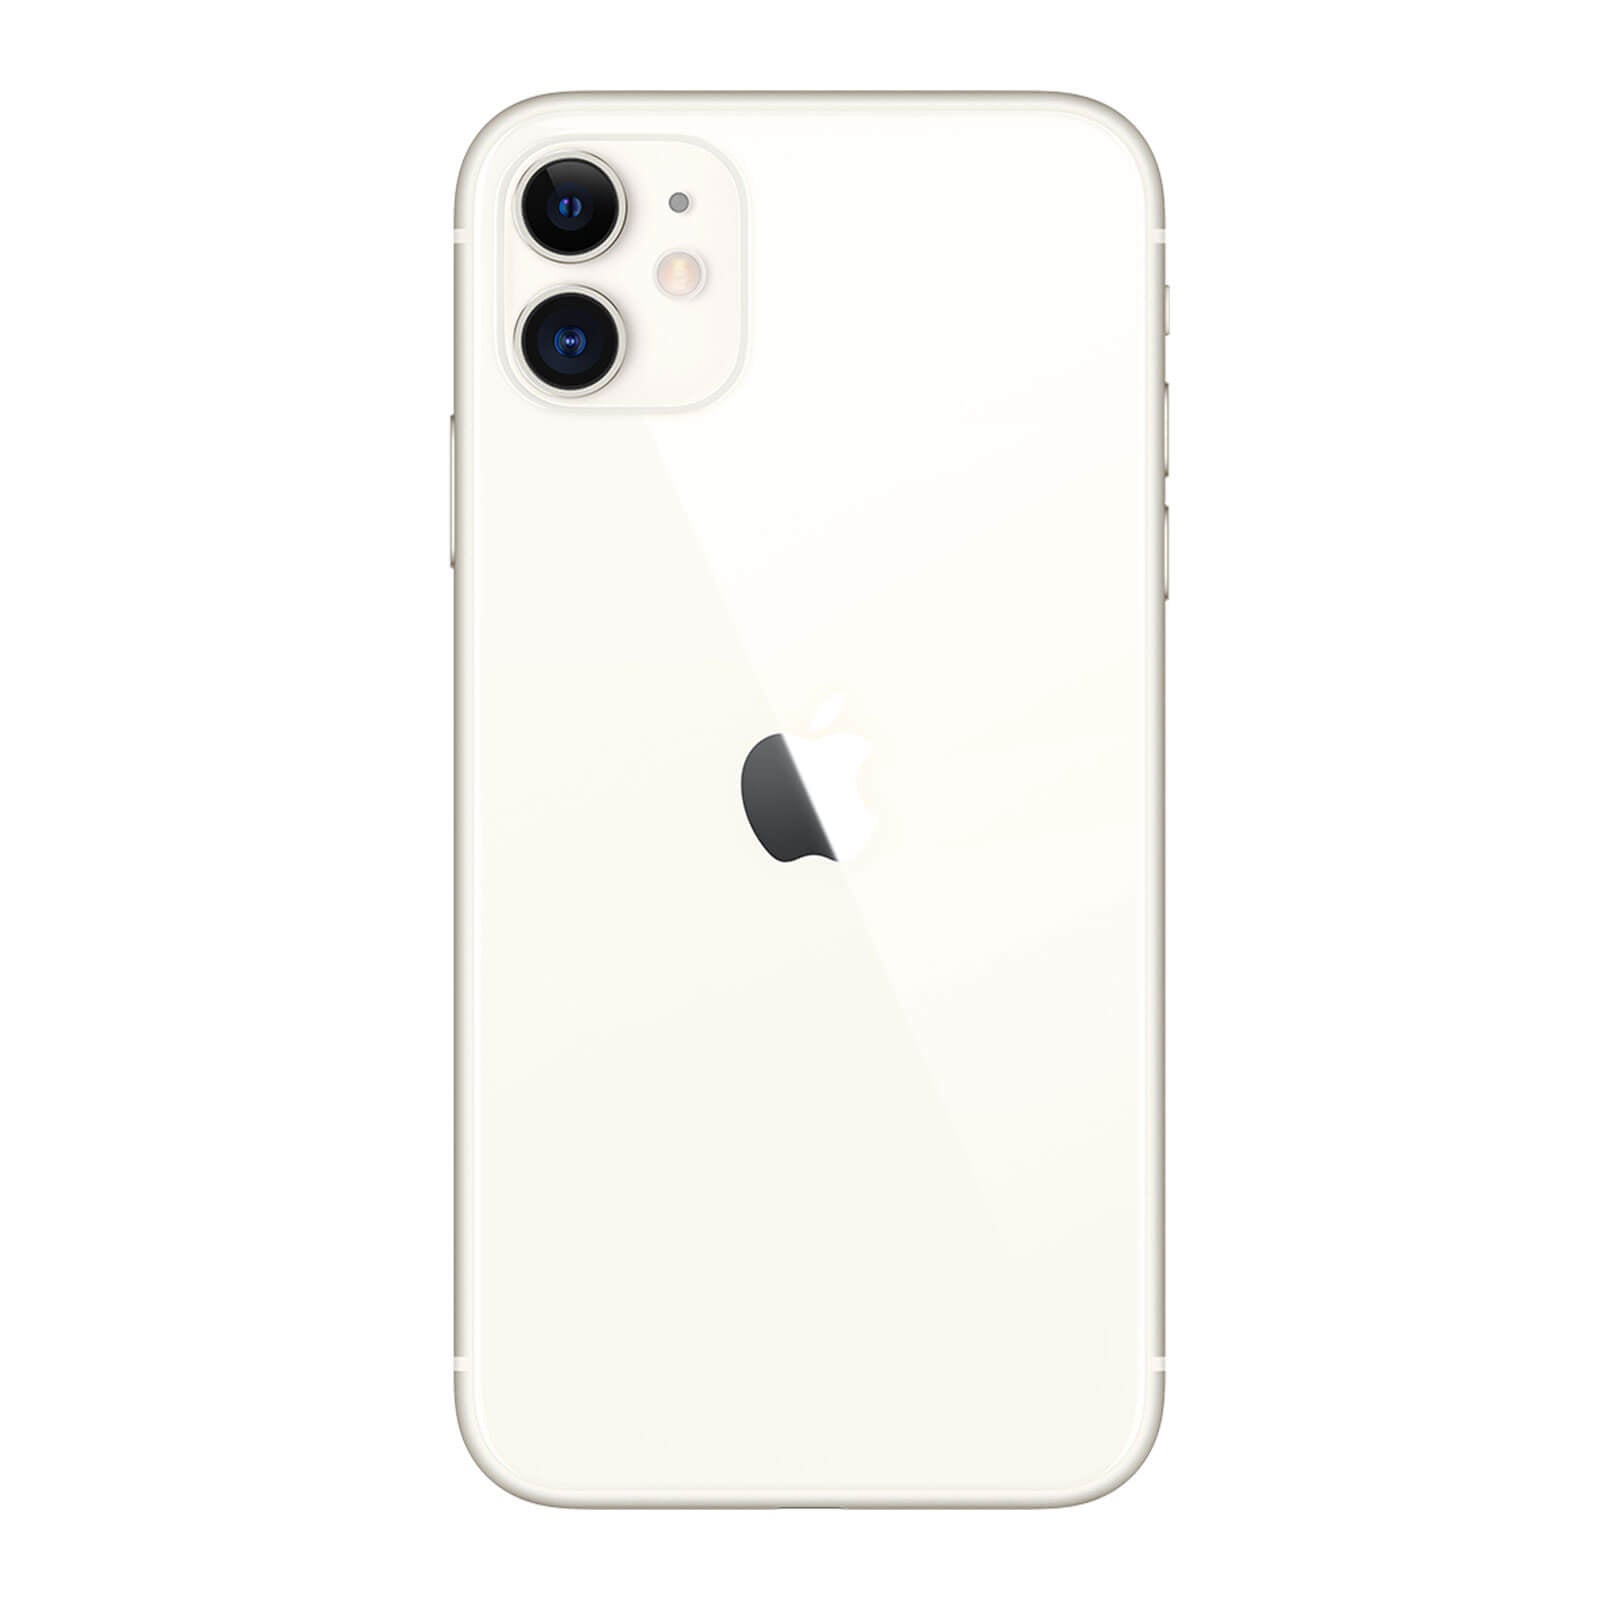 Apple iPhone 11 128GB Blanco Muy Bueno - Desbloqueado